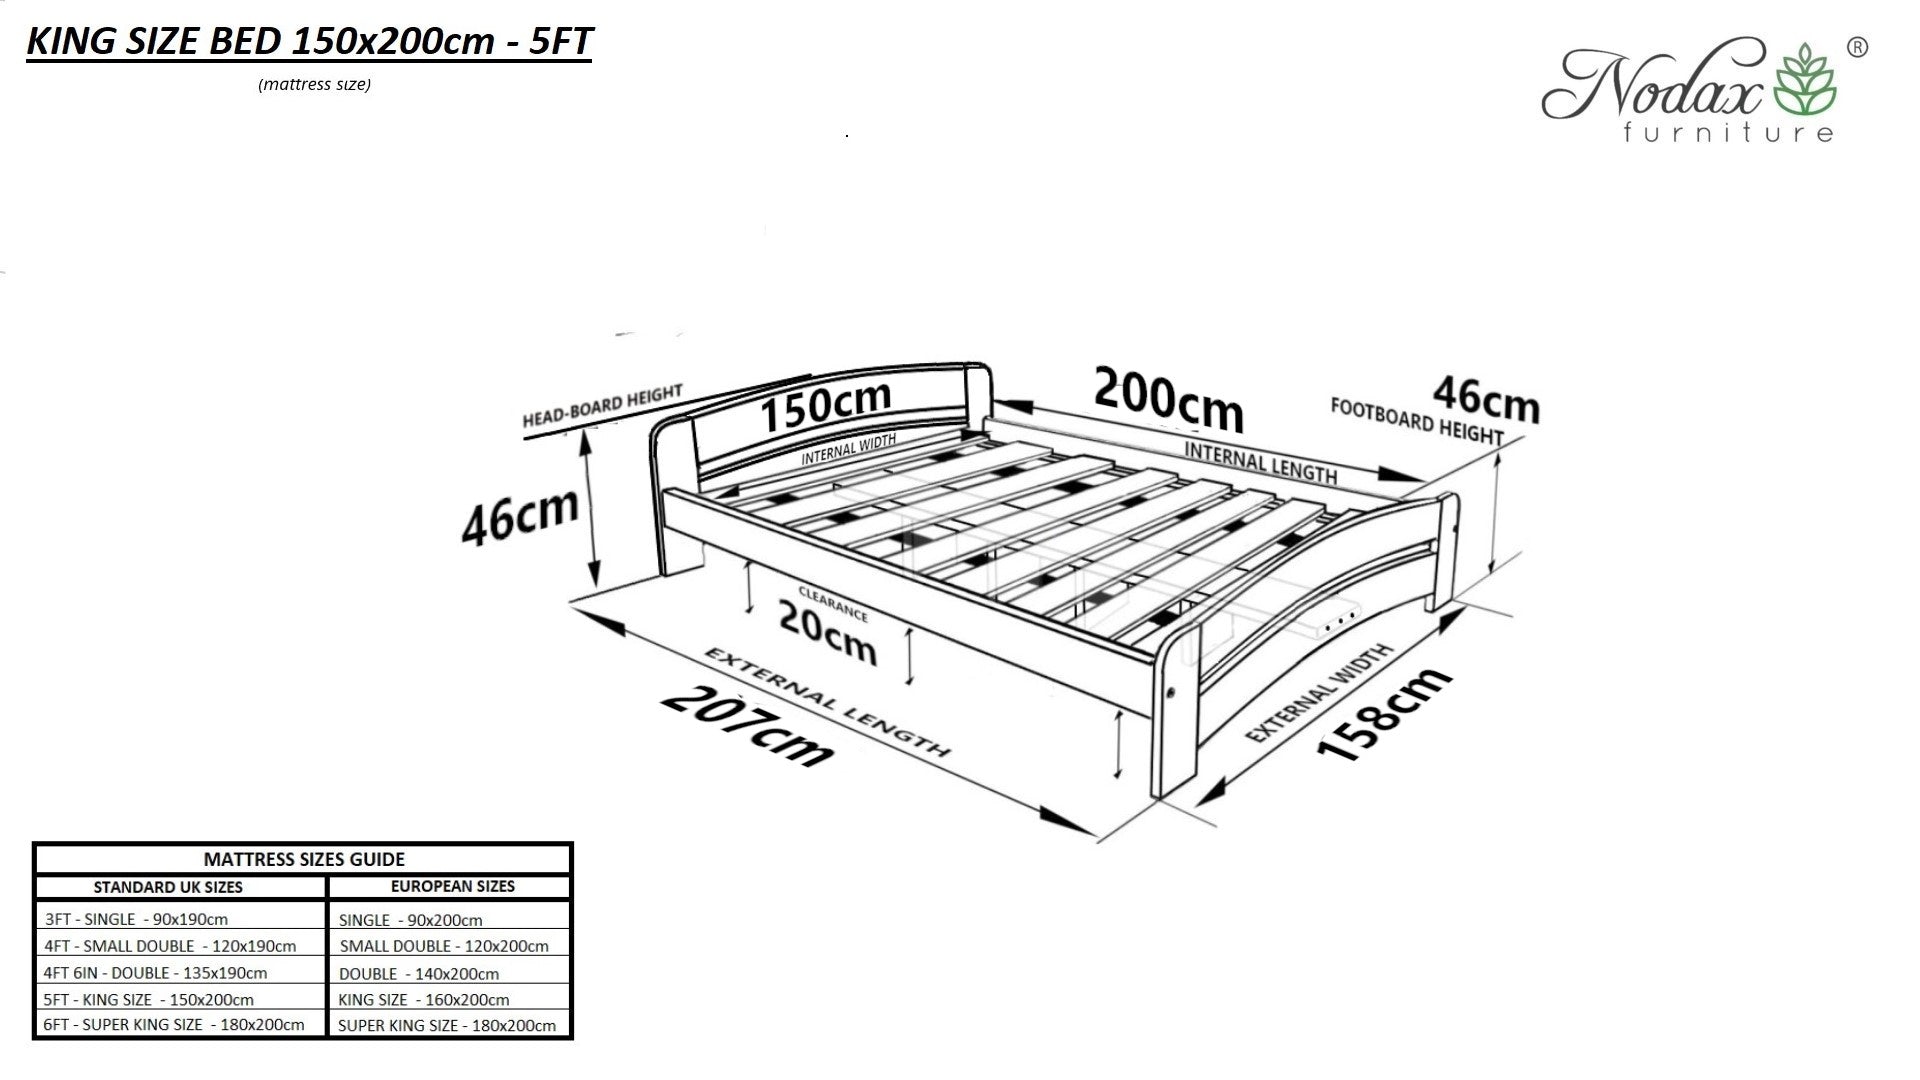 Wooden bed frame Ursa Major (F12)